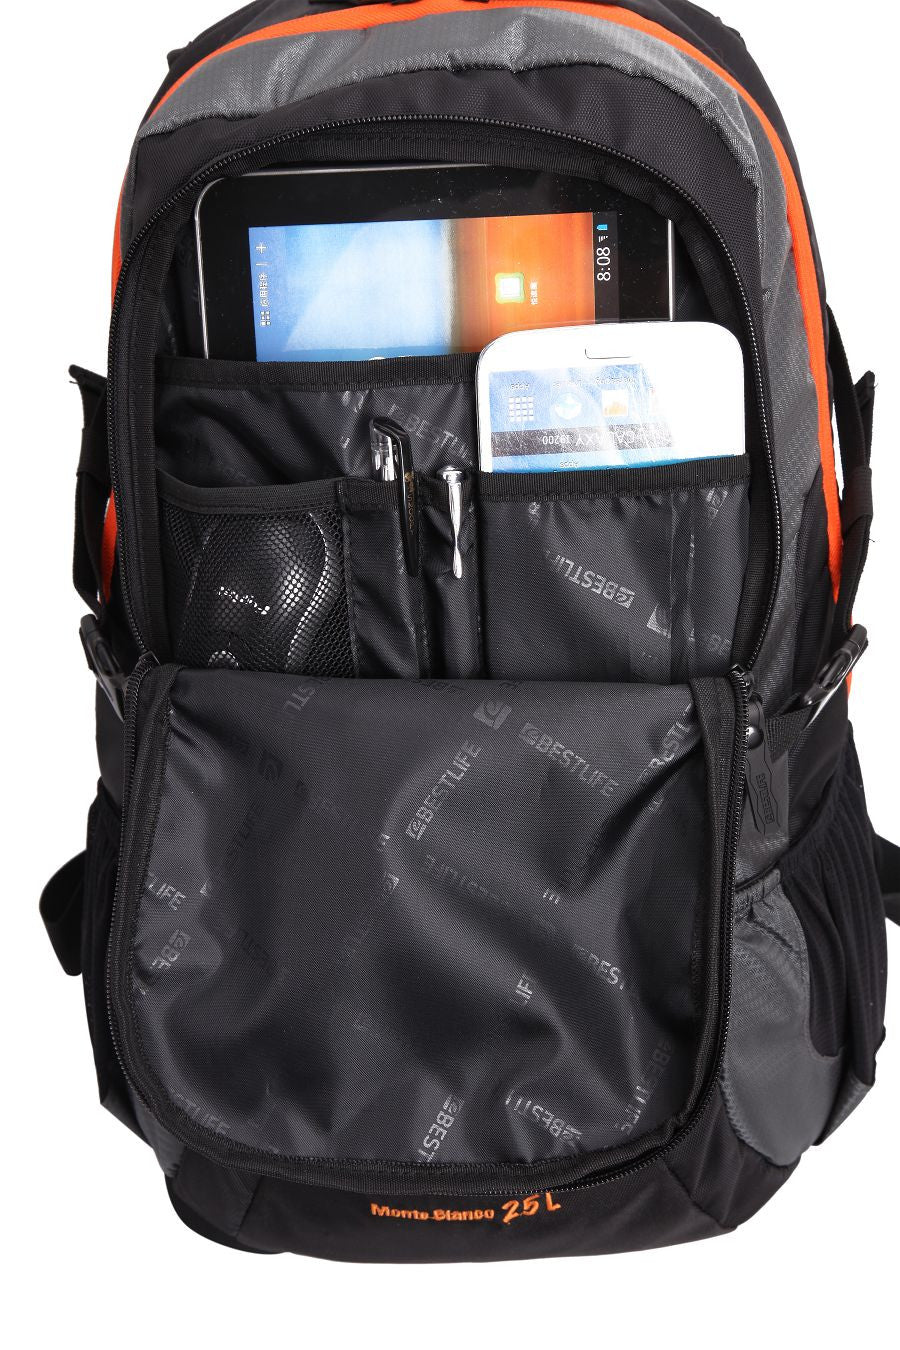 Bestlife Backpack BLB-3076-15.6'' (Black and Orange) - OBM Distribution, Inc.